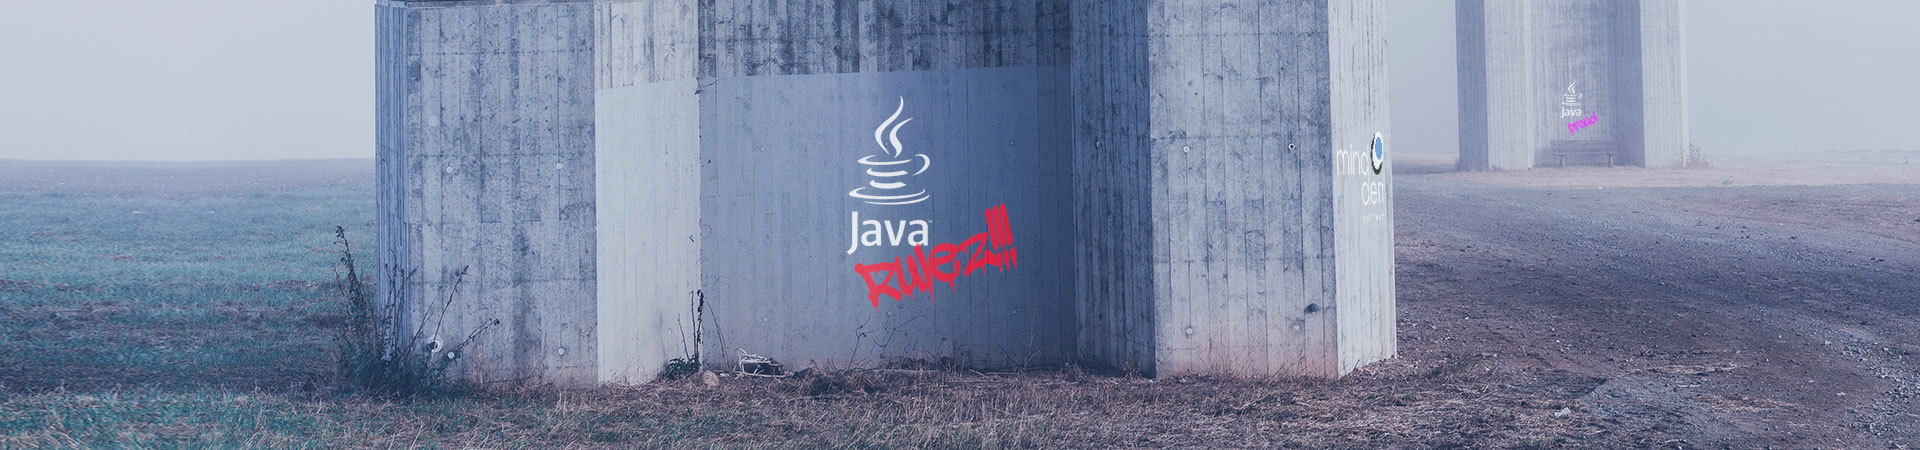 Java senior developer